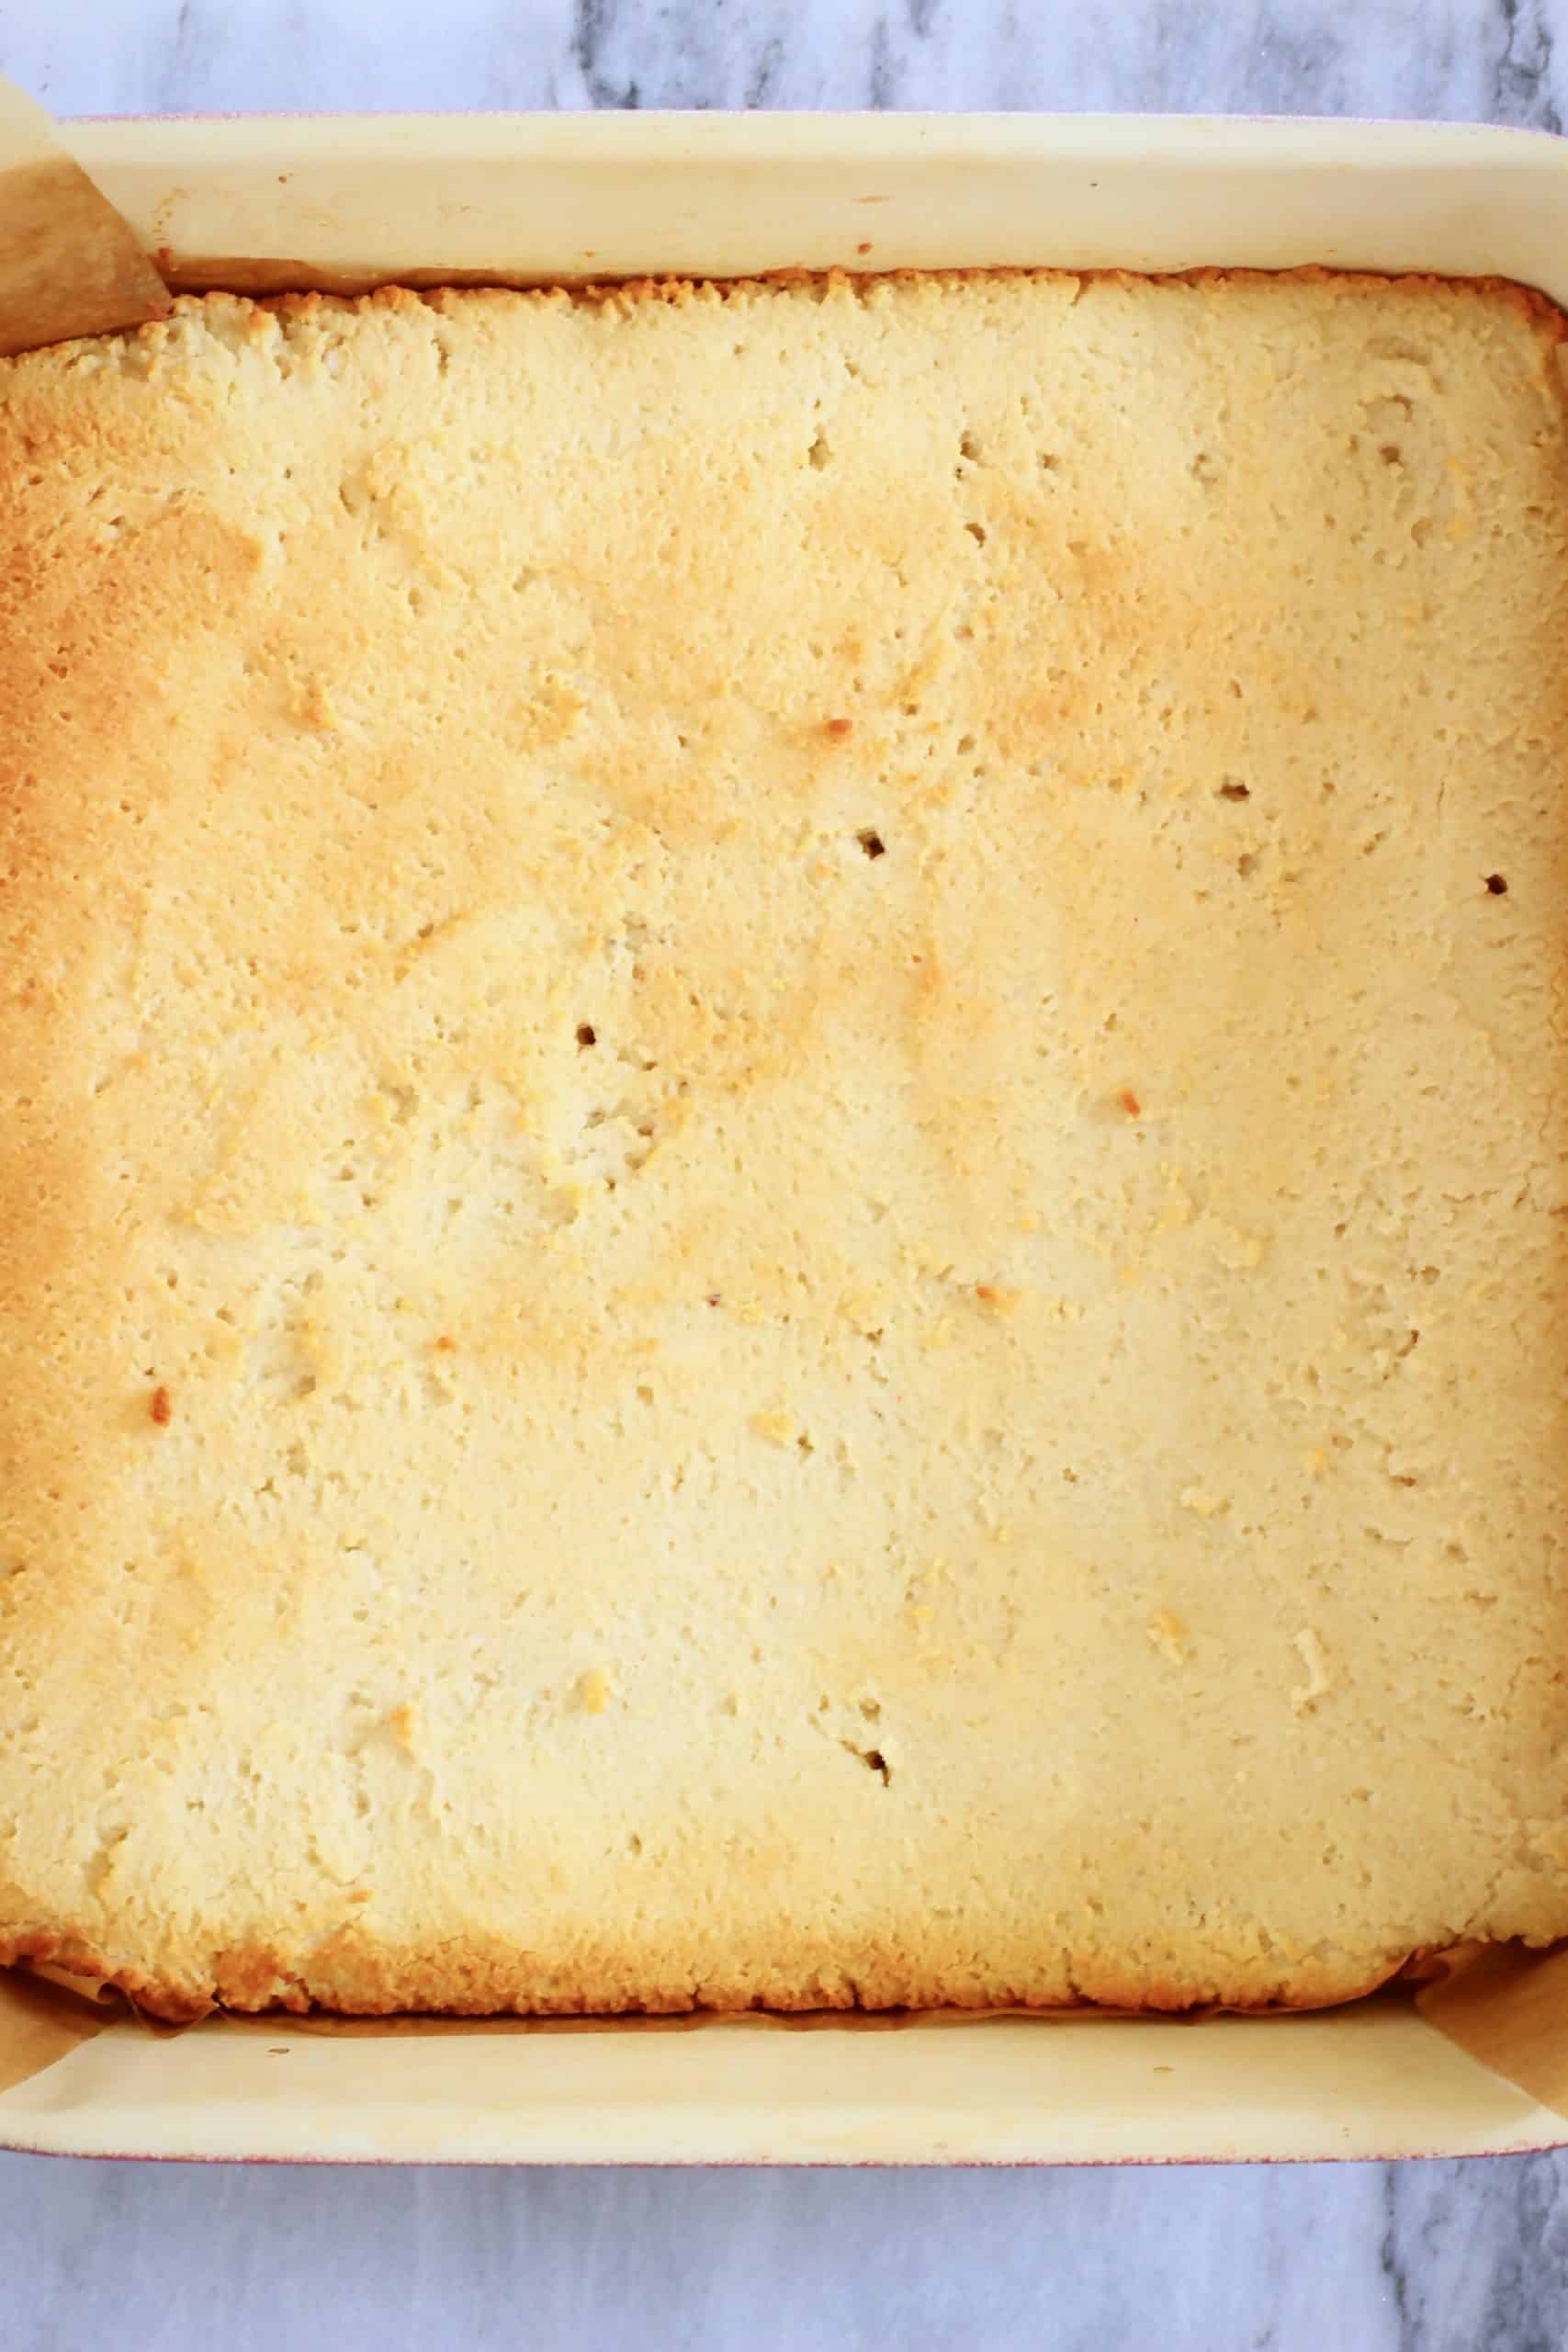 Baked gluten-free vegan tiramisu sponge cake in a square baking tin lined with baking paper